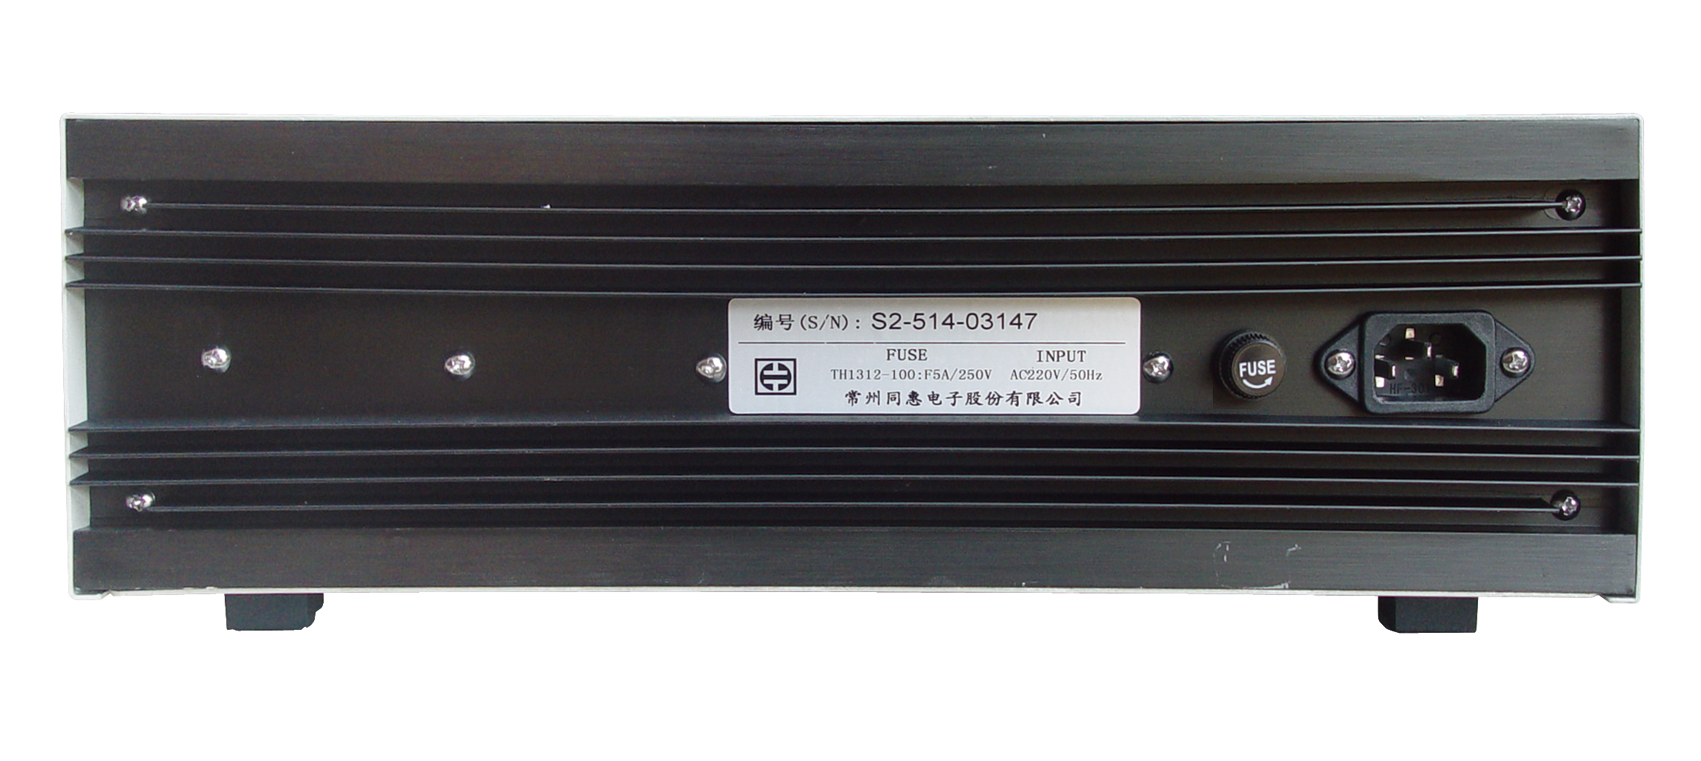 供应四川TH1312-100音频扫频信号发生器销售、价格、批发、哪家好、热线电话